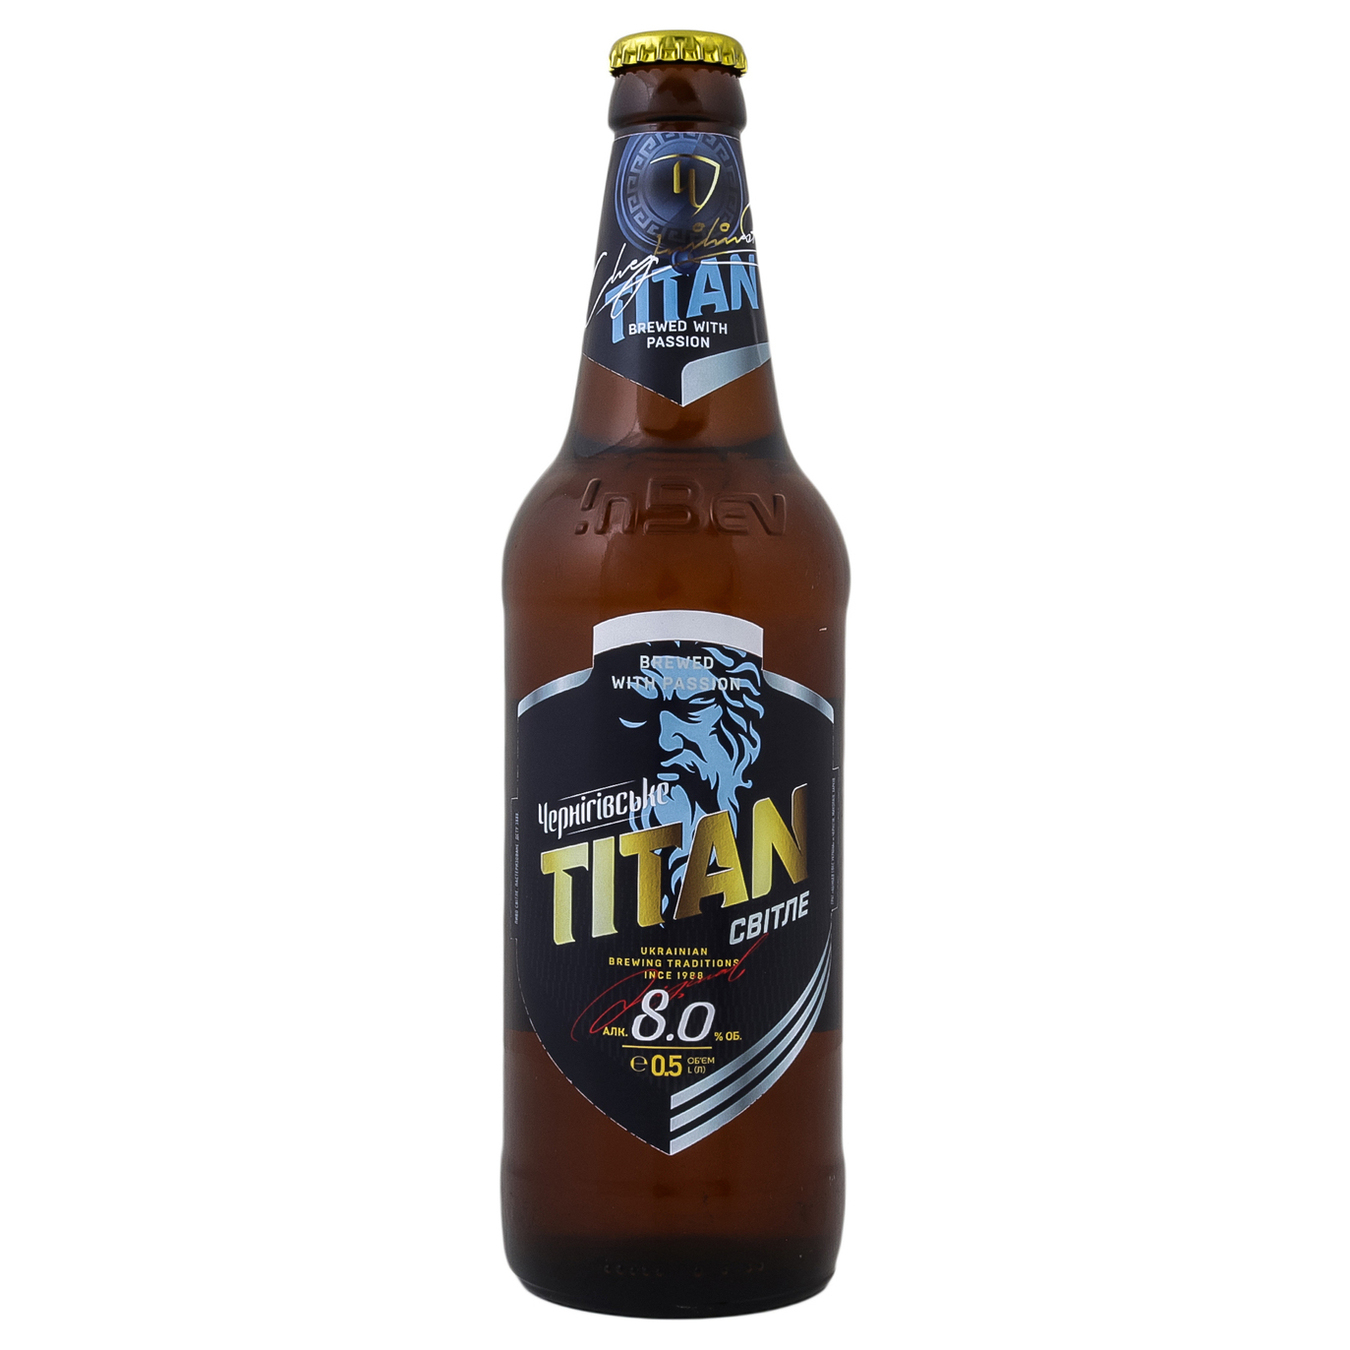 Chernihivske Titan light beer 8% 0.5l